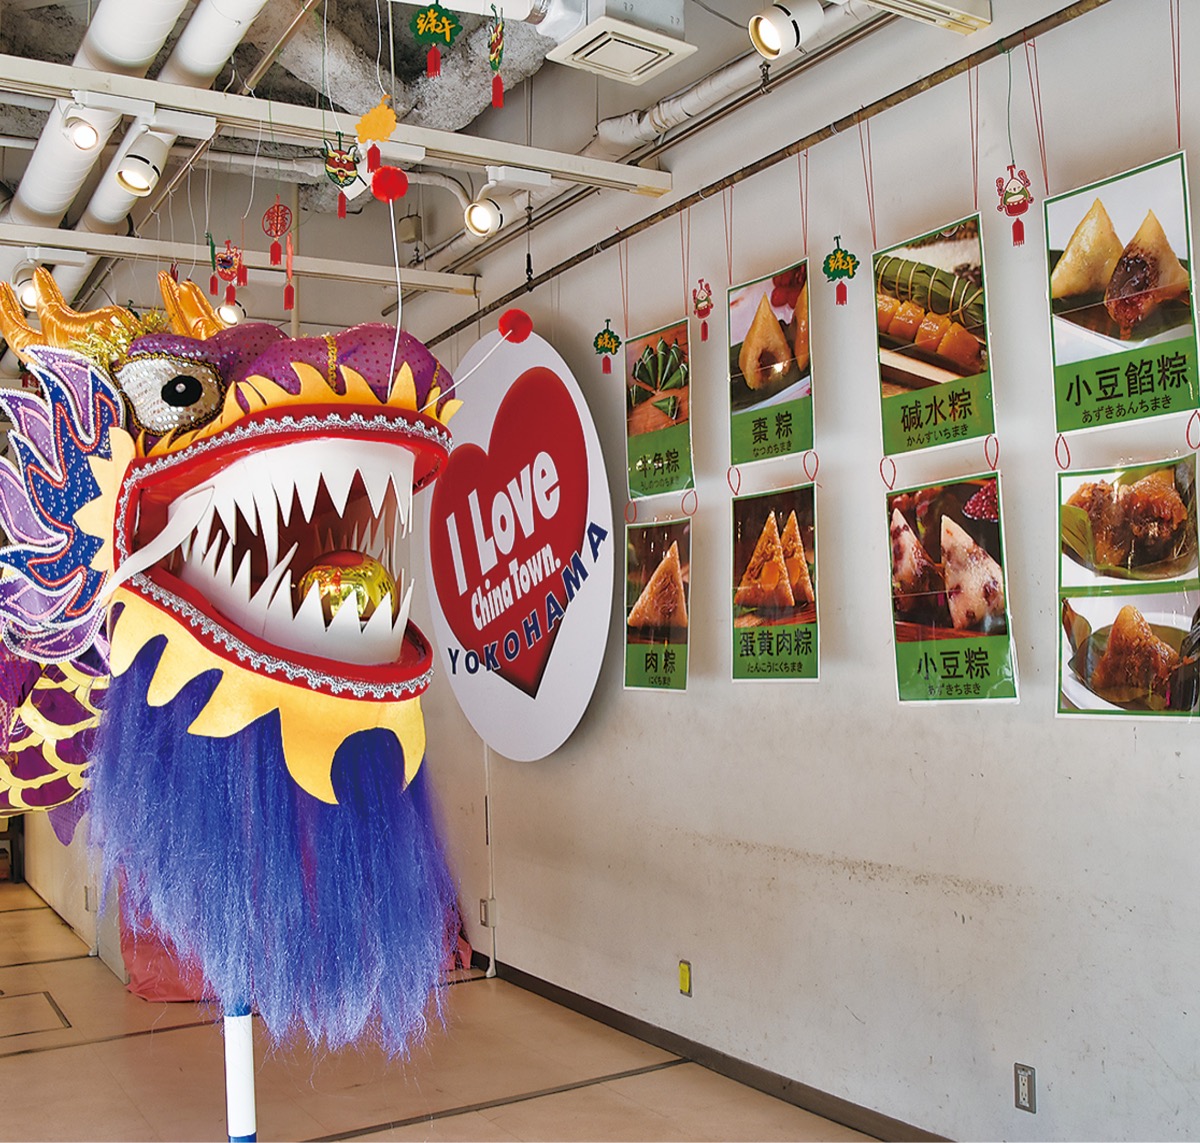 横浜中華街発展会 端午節「チマキ」を無料配布 中区内の小６年生に | 中区・西区 | タウンニュース